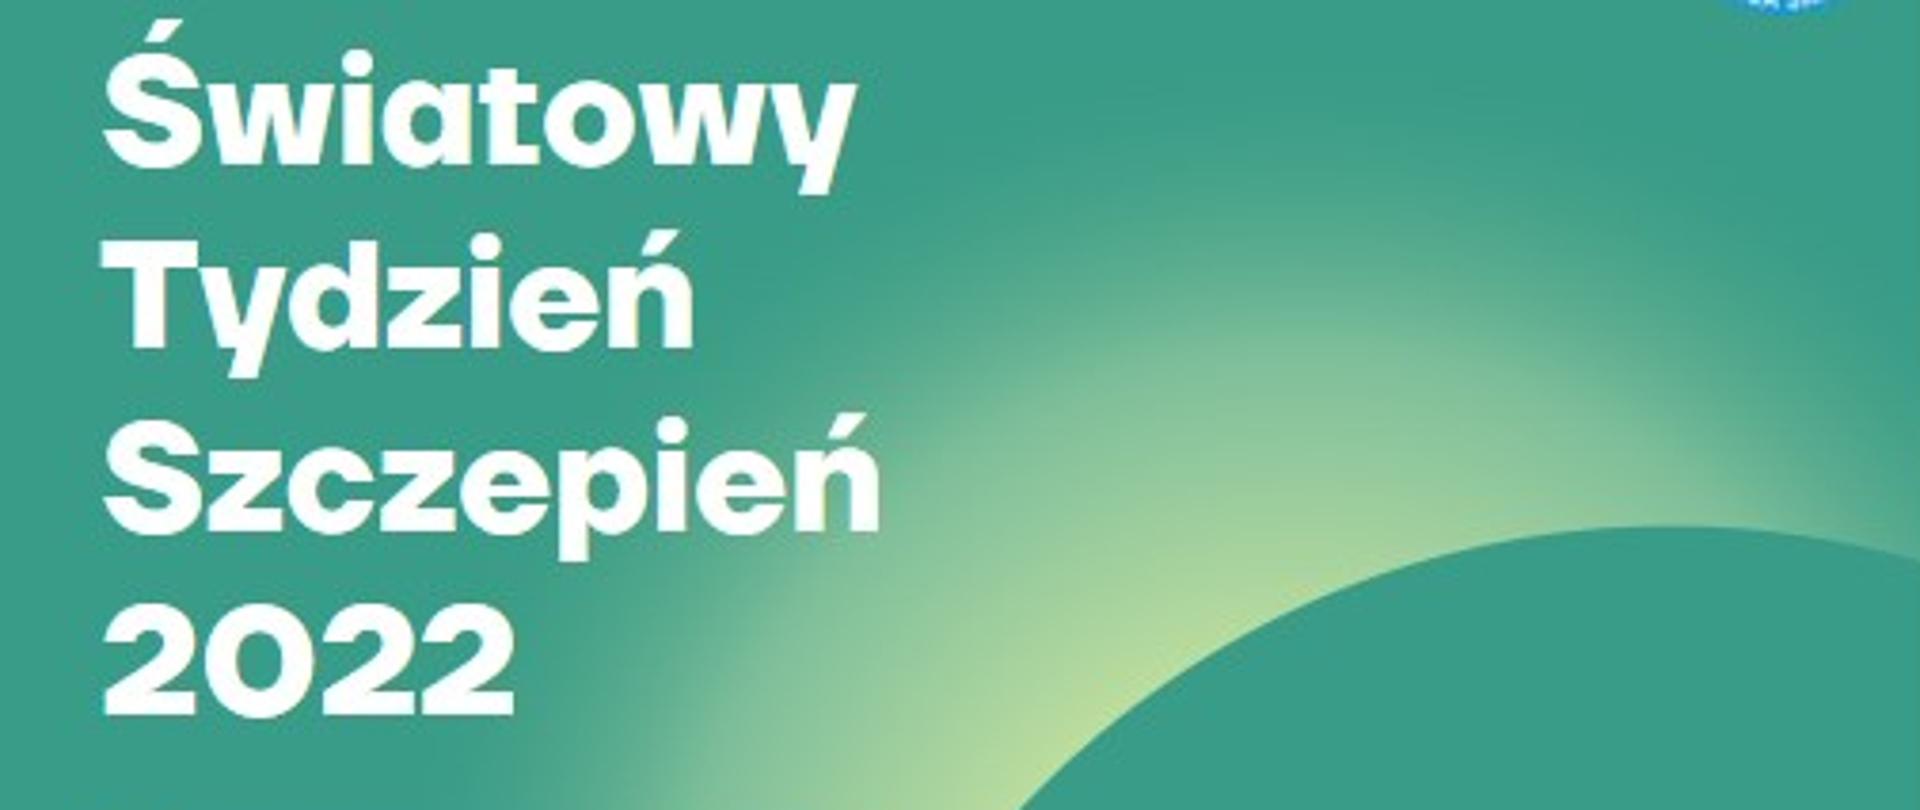 Biały napis na zielonym tle: Światowy Tydzień Szczepień 2022 z prawej strony na dole zdjęcie lekarski ze strzykawką 